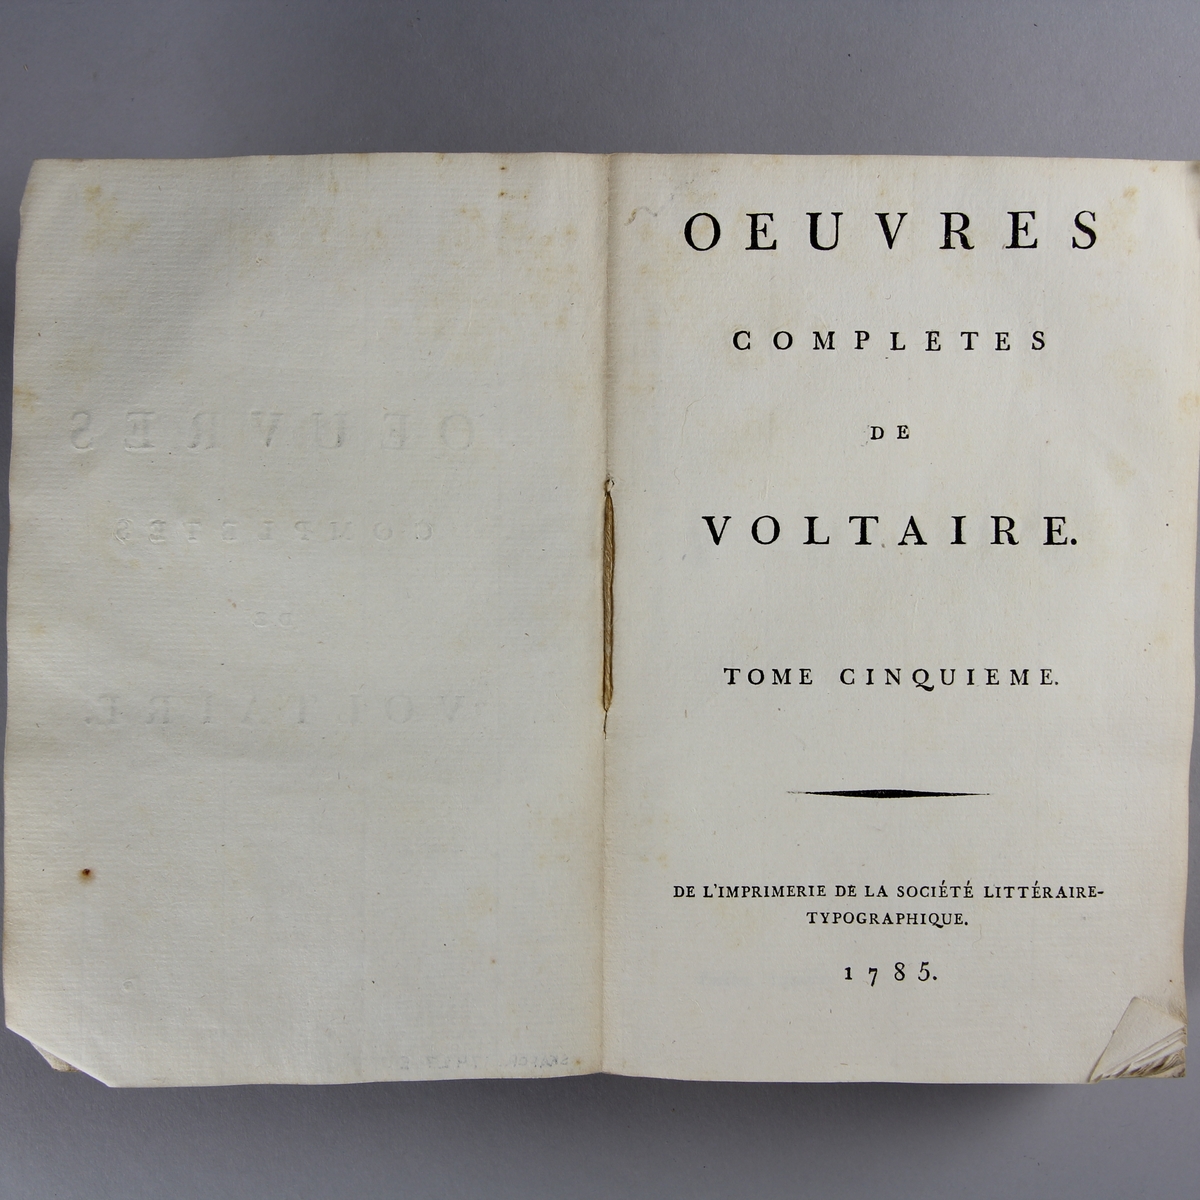 Bok, häftad,"Oeuvres complètes de Voltaire." del 5, tryckt 1785.
Pärm av gråblått papper, skurna snitt. På ryggen pappersetikett med tryckt text med volymens namn och nummer. Ryggen blekt.